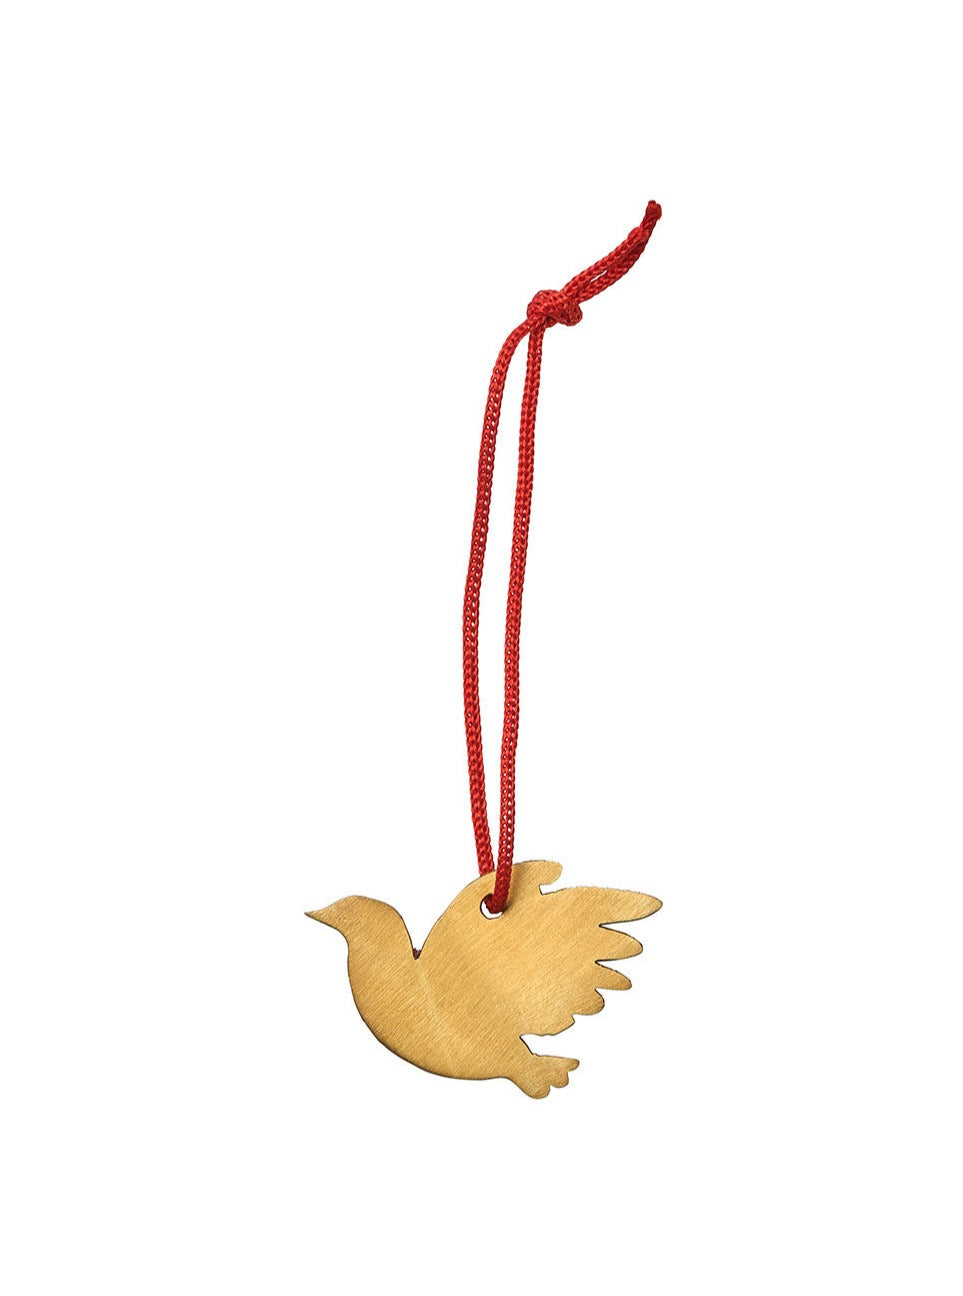 Brass Bird Ornament - Thrush